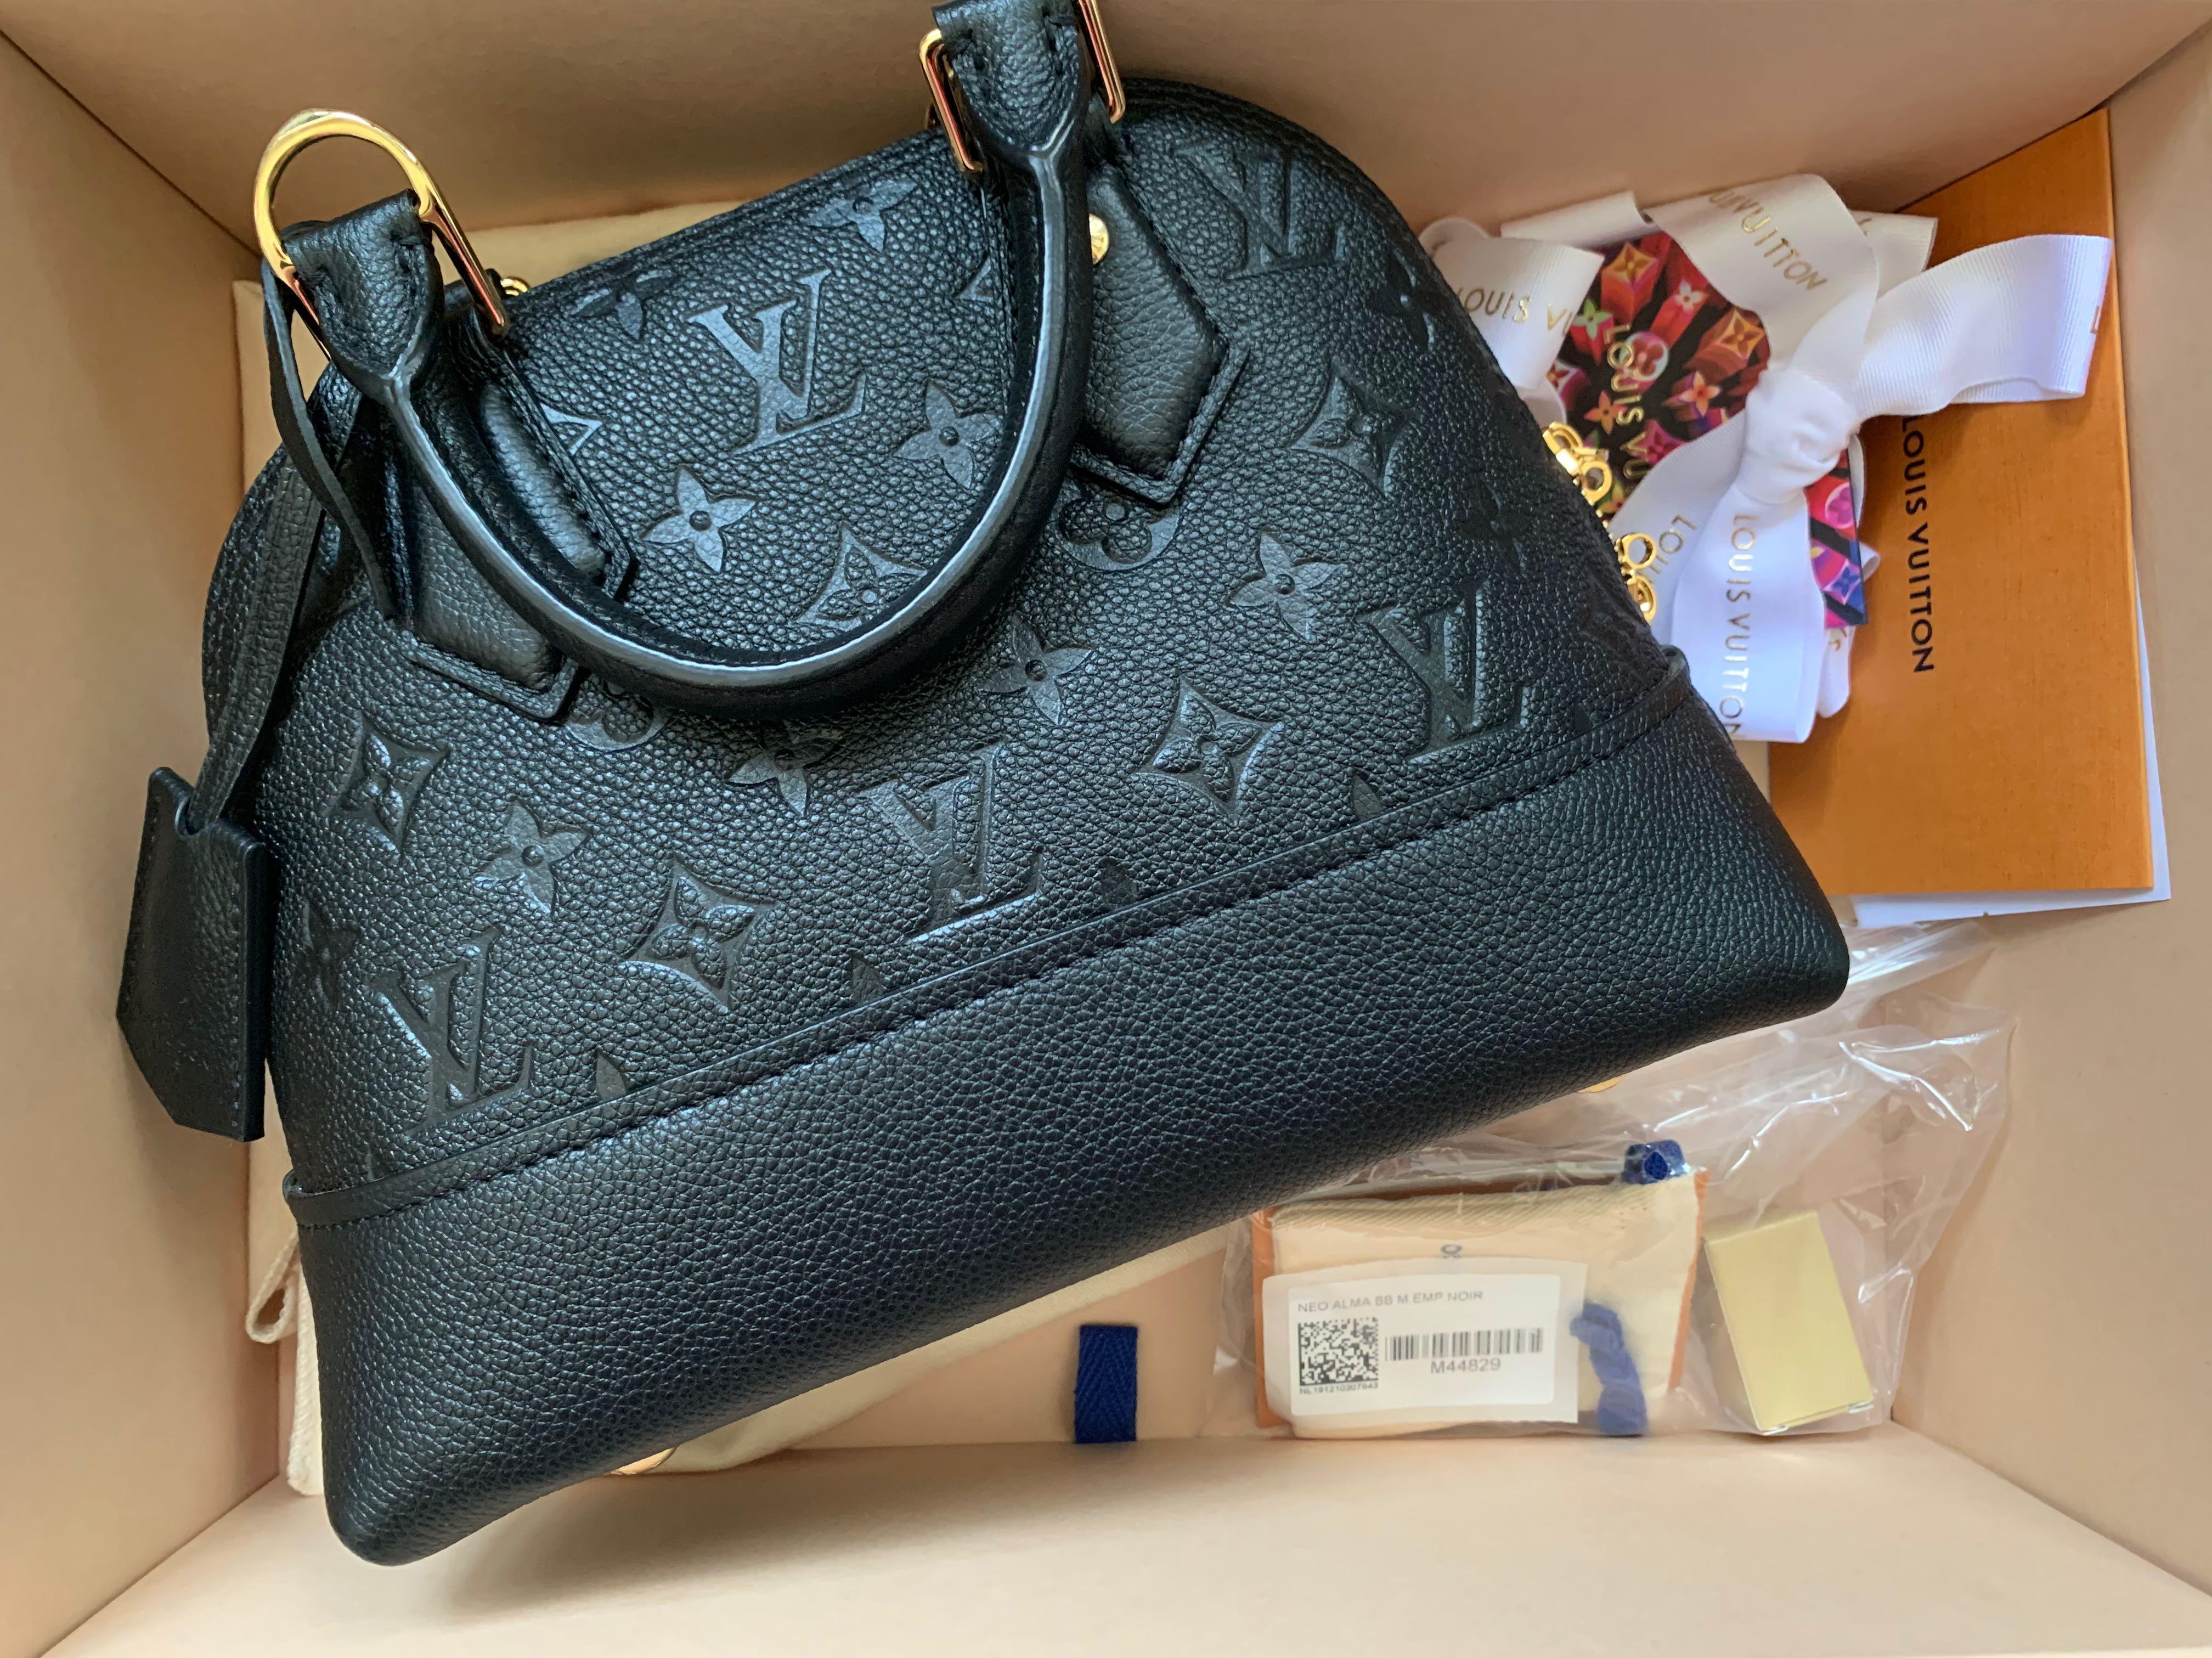 Louis Vuitton Black Empreinte Monogram Leather Neo Alma Bb Bag